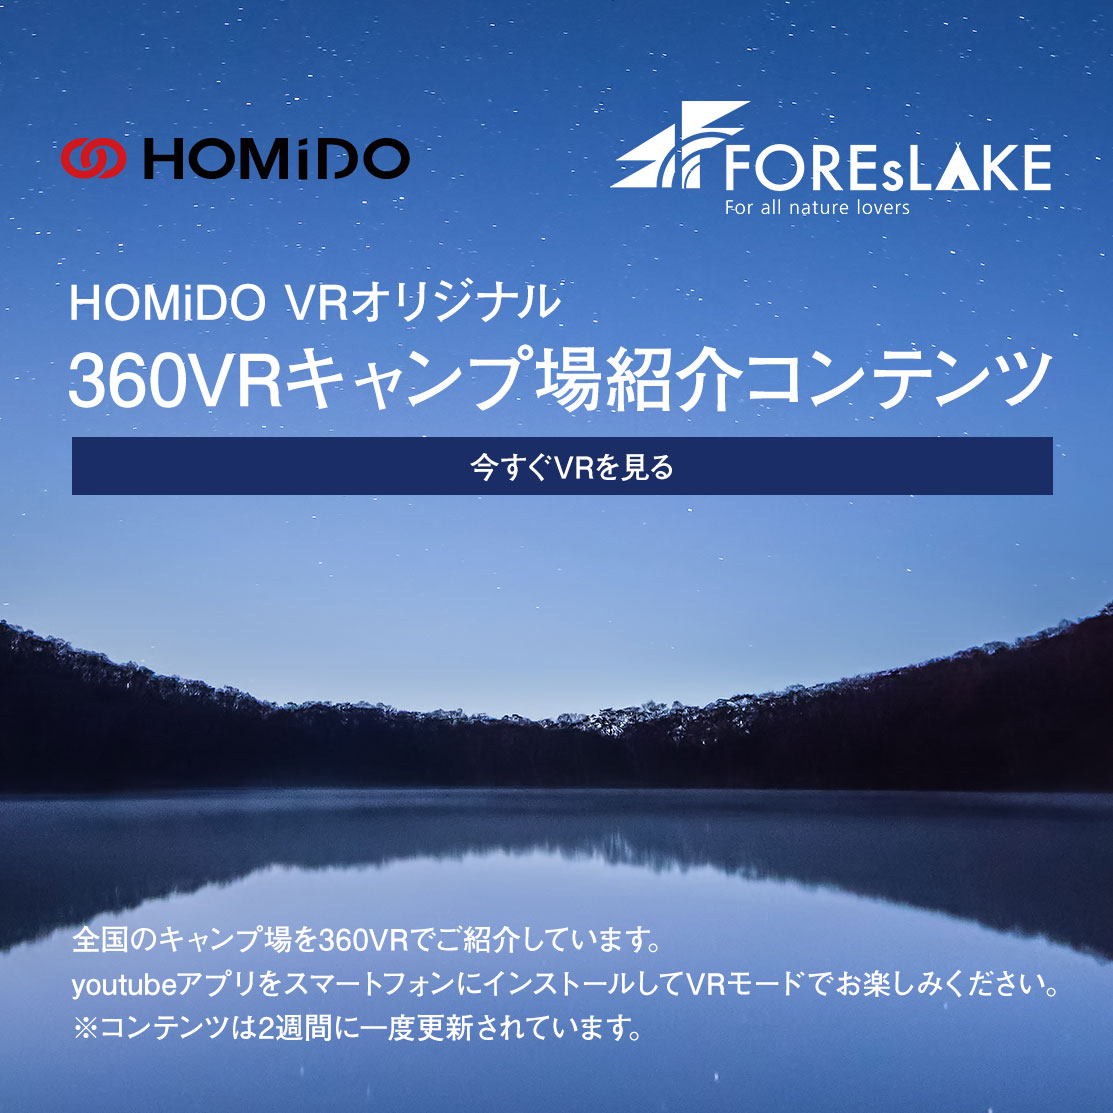 Vrゴーグル Homidoシリーズ 360vr動画 Vrゴーグルランキングno 1の広角なtrue Immersion Opticsレンズ採用のフランス発スマホvrゴーグル Homido 公式